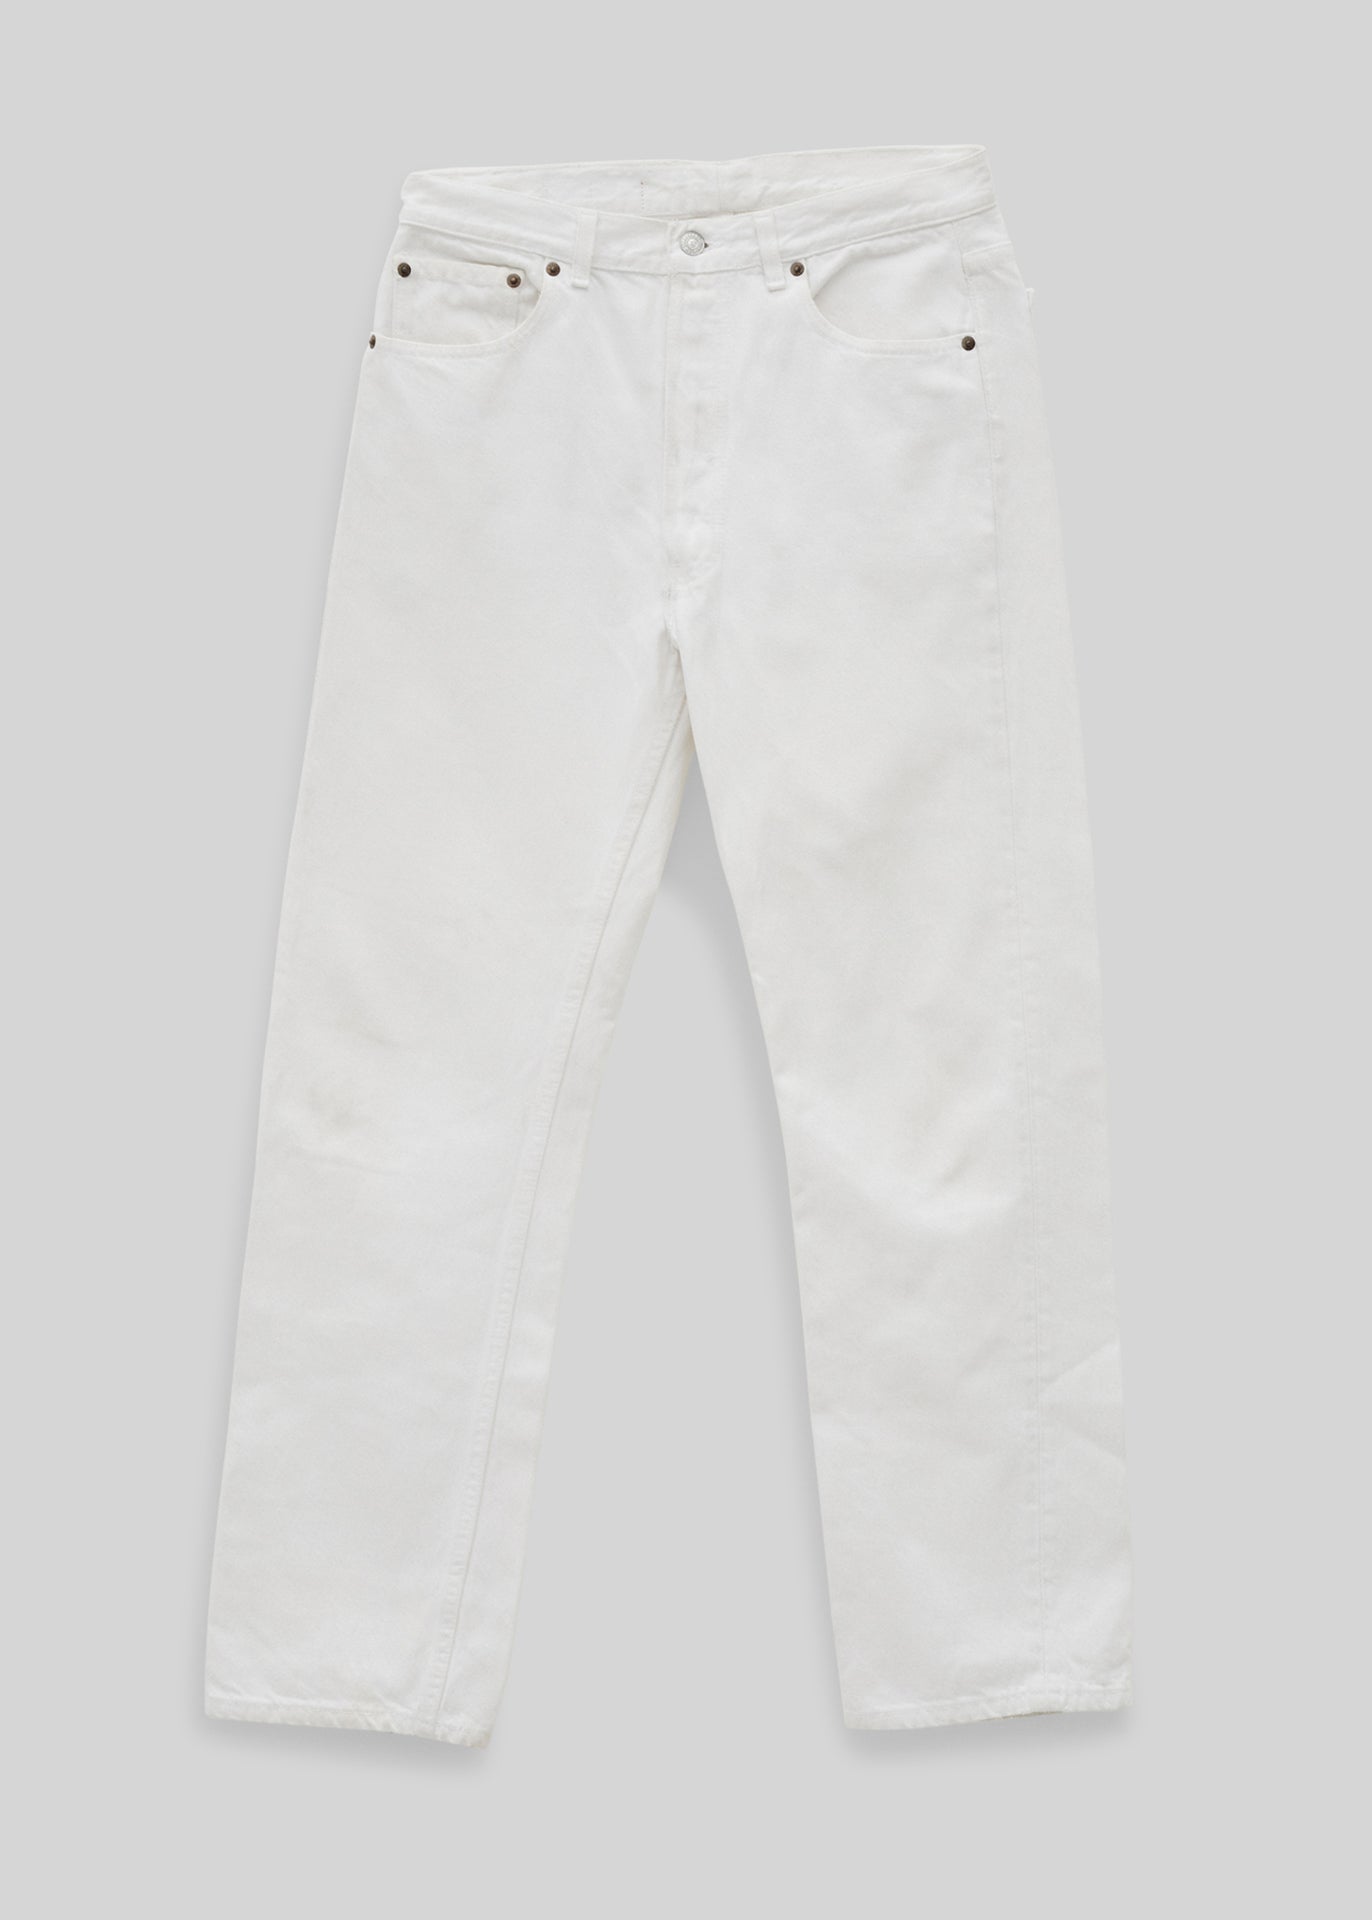 Levi's 501 jeans - 34